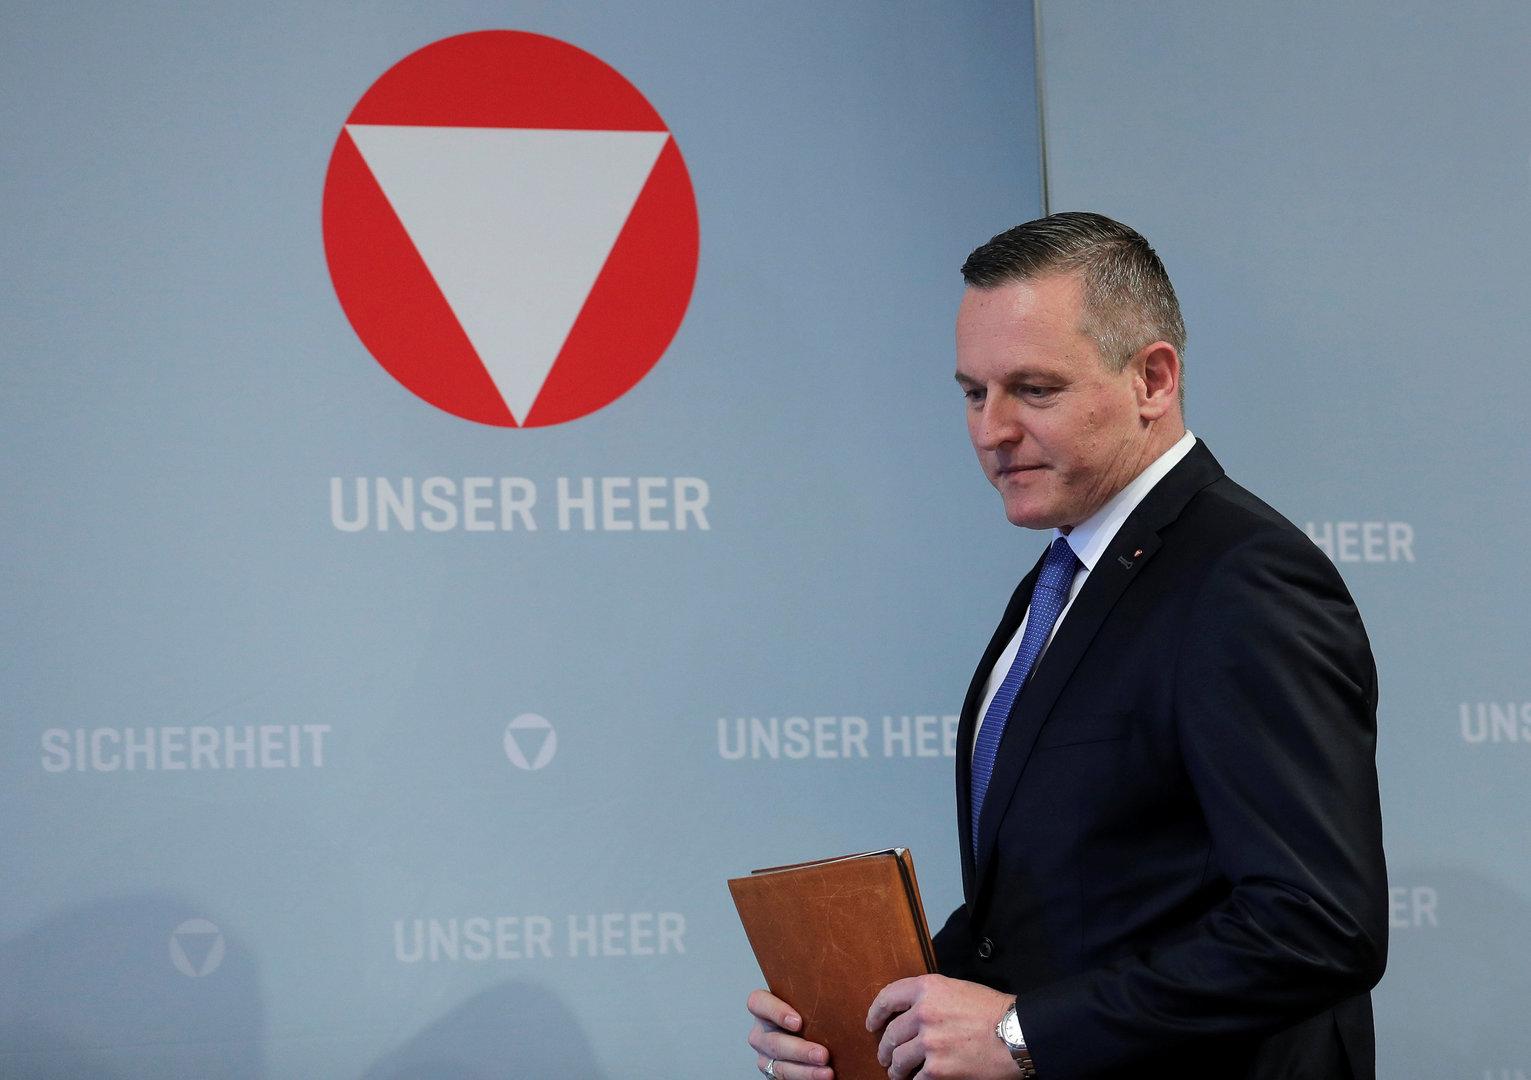 FPÖ-Heeres-Minister fühlt sich von Van der Bellen bestätigt